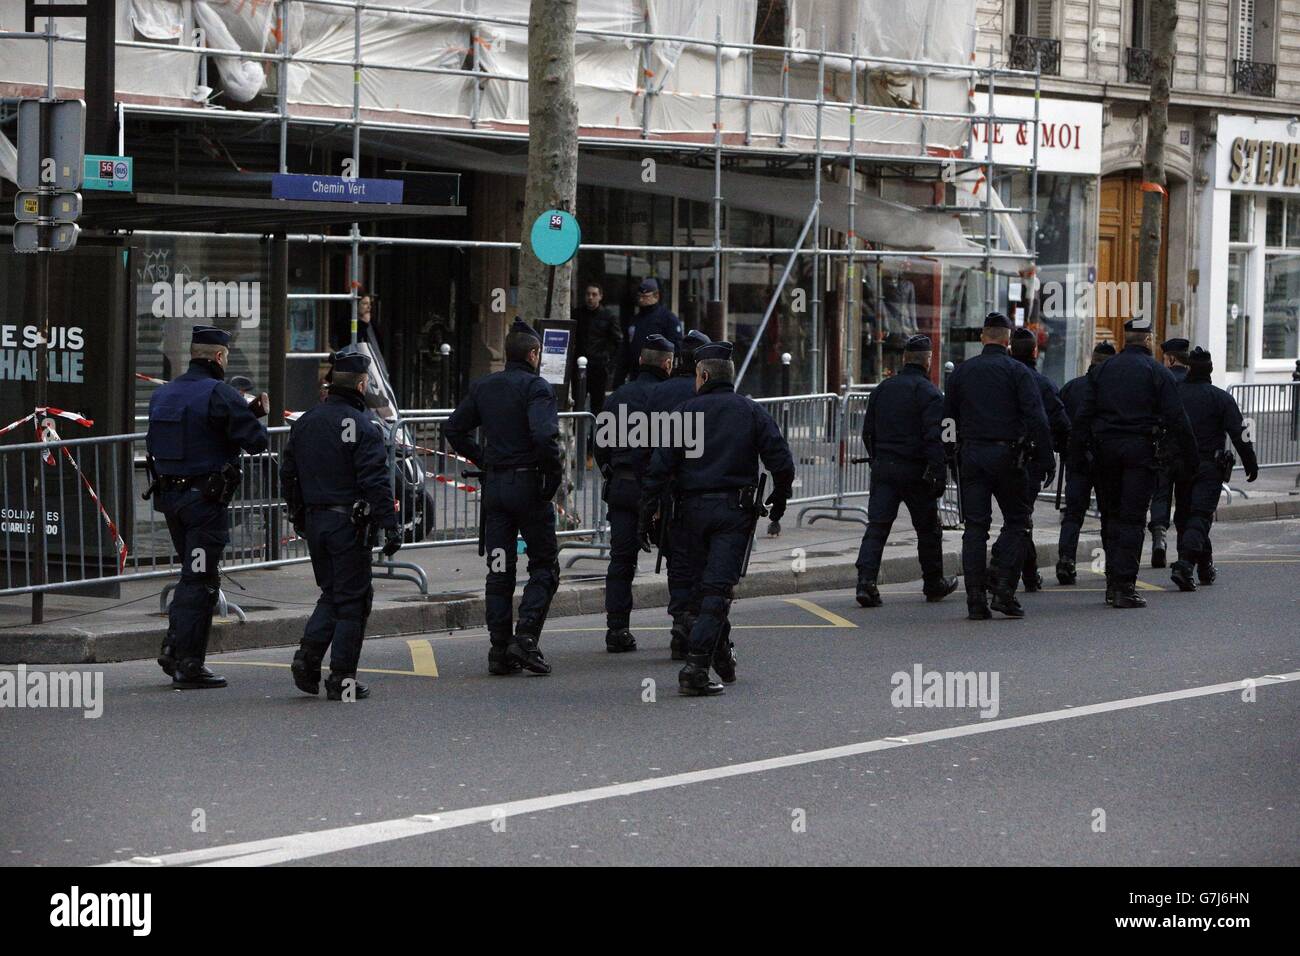 La police se trouve près des bureaux du magazine satirique Charlie Hebdo, alors que des dizaines de dirigeants du monde ont mené une marche provocante à travers Paris, en France, à la suite des attentats terroristes. Banque D'Images